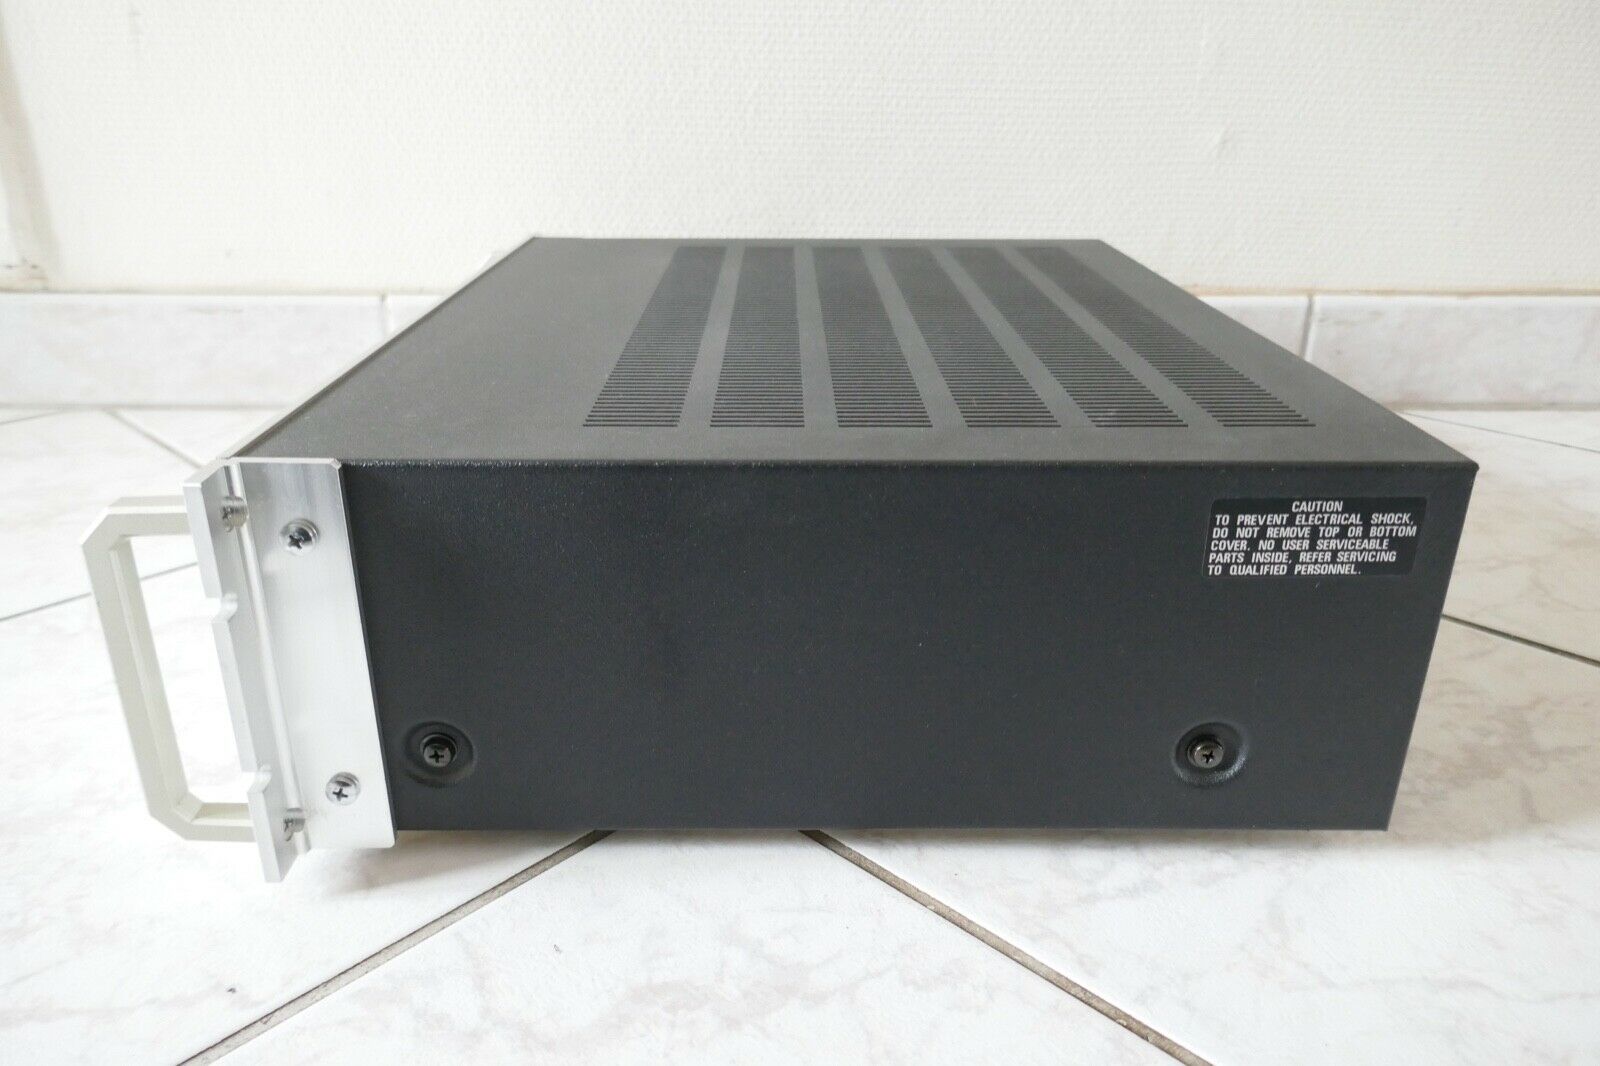 amplificateur amplifier scott 460a vintage occasion